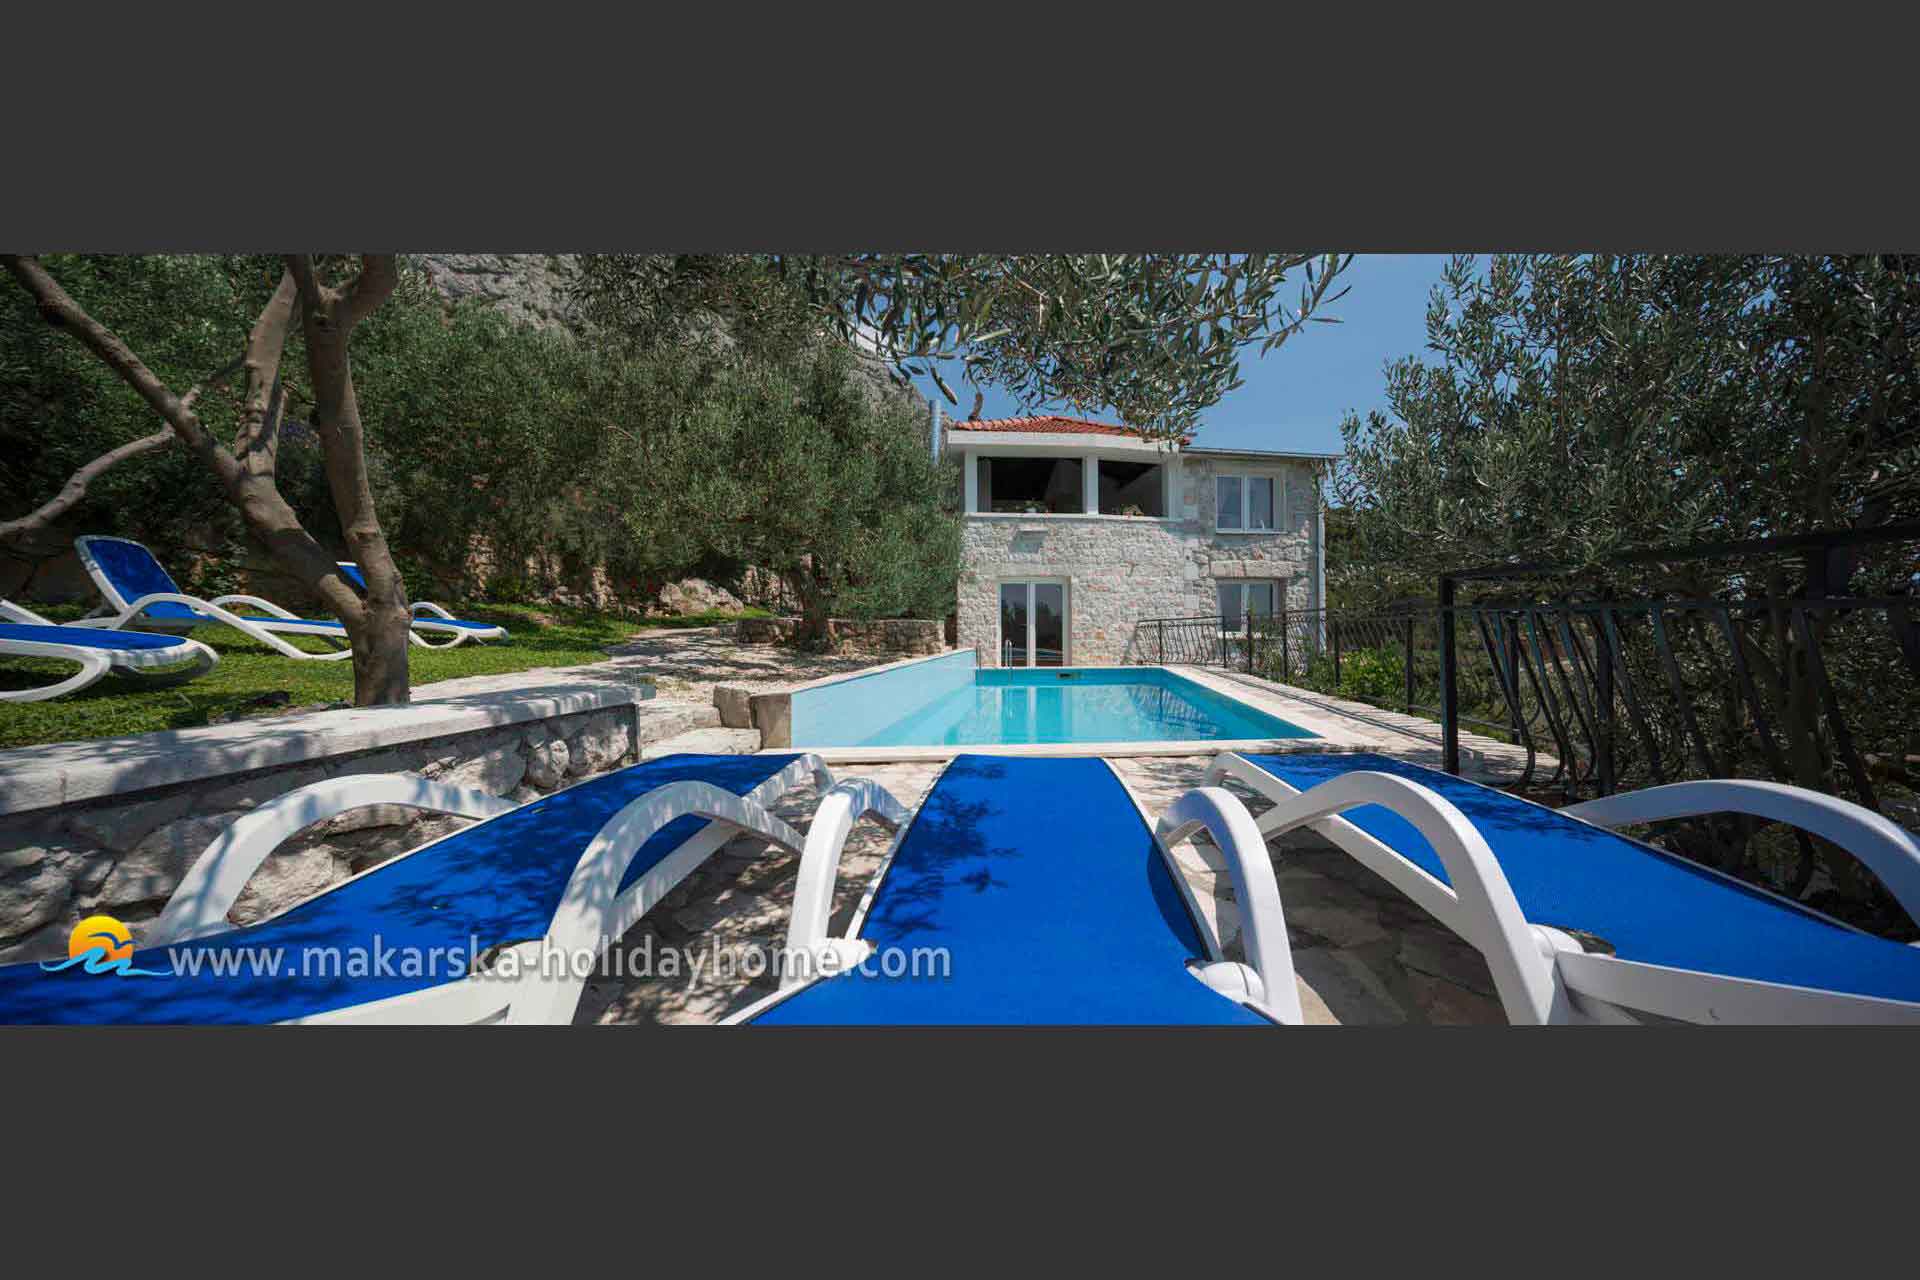 Ferienhaus mit Pool in Kroatien - Makarska - Villa Mlinice / 02